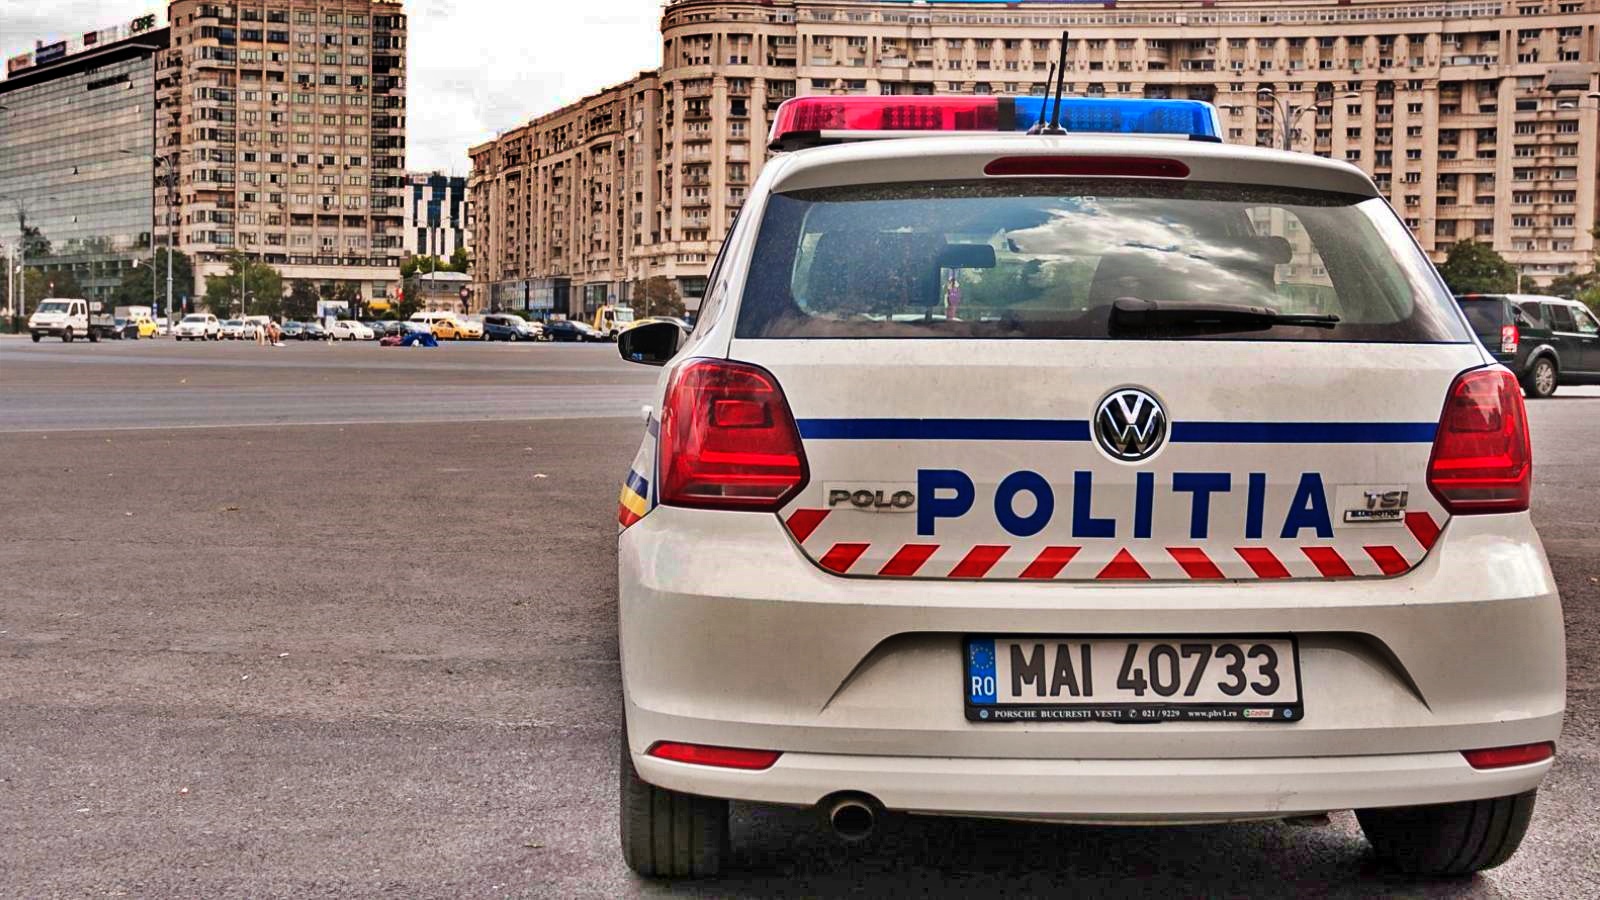 Polizia rumena Il messaggio per milioni di rumeni in tutto il paese